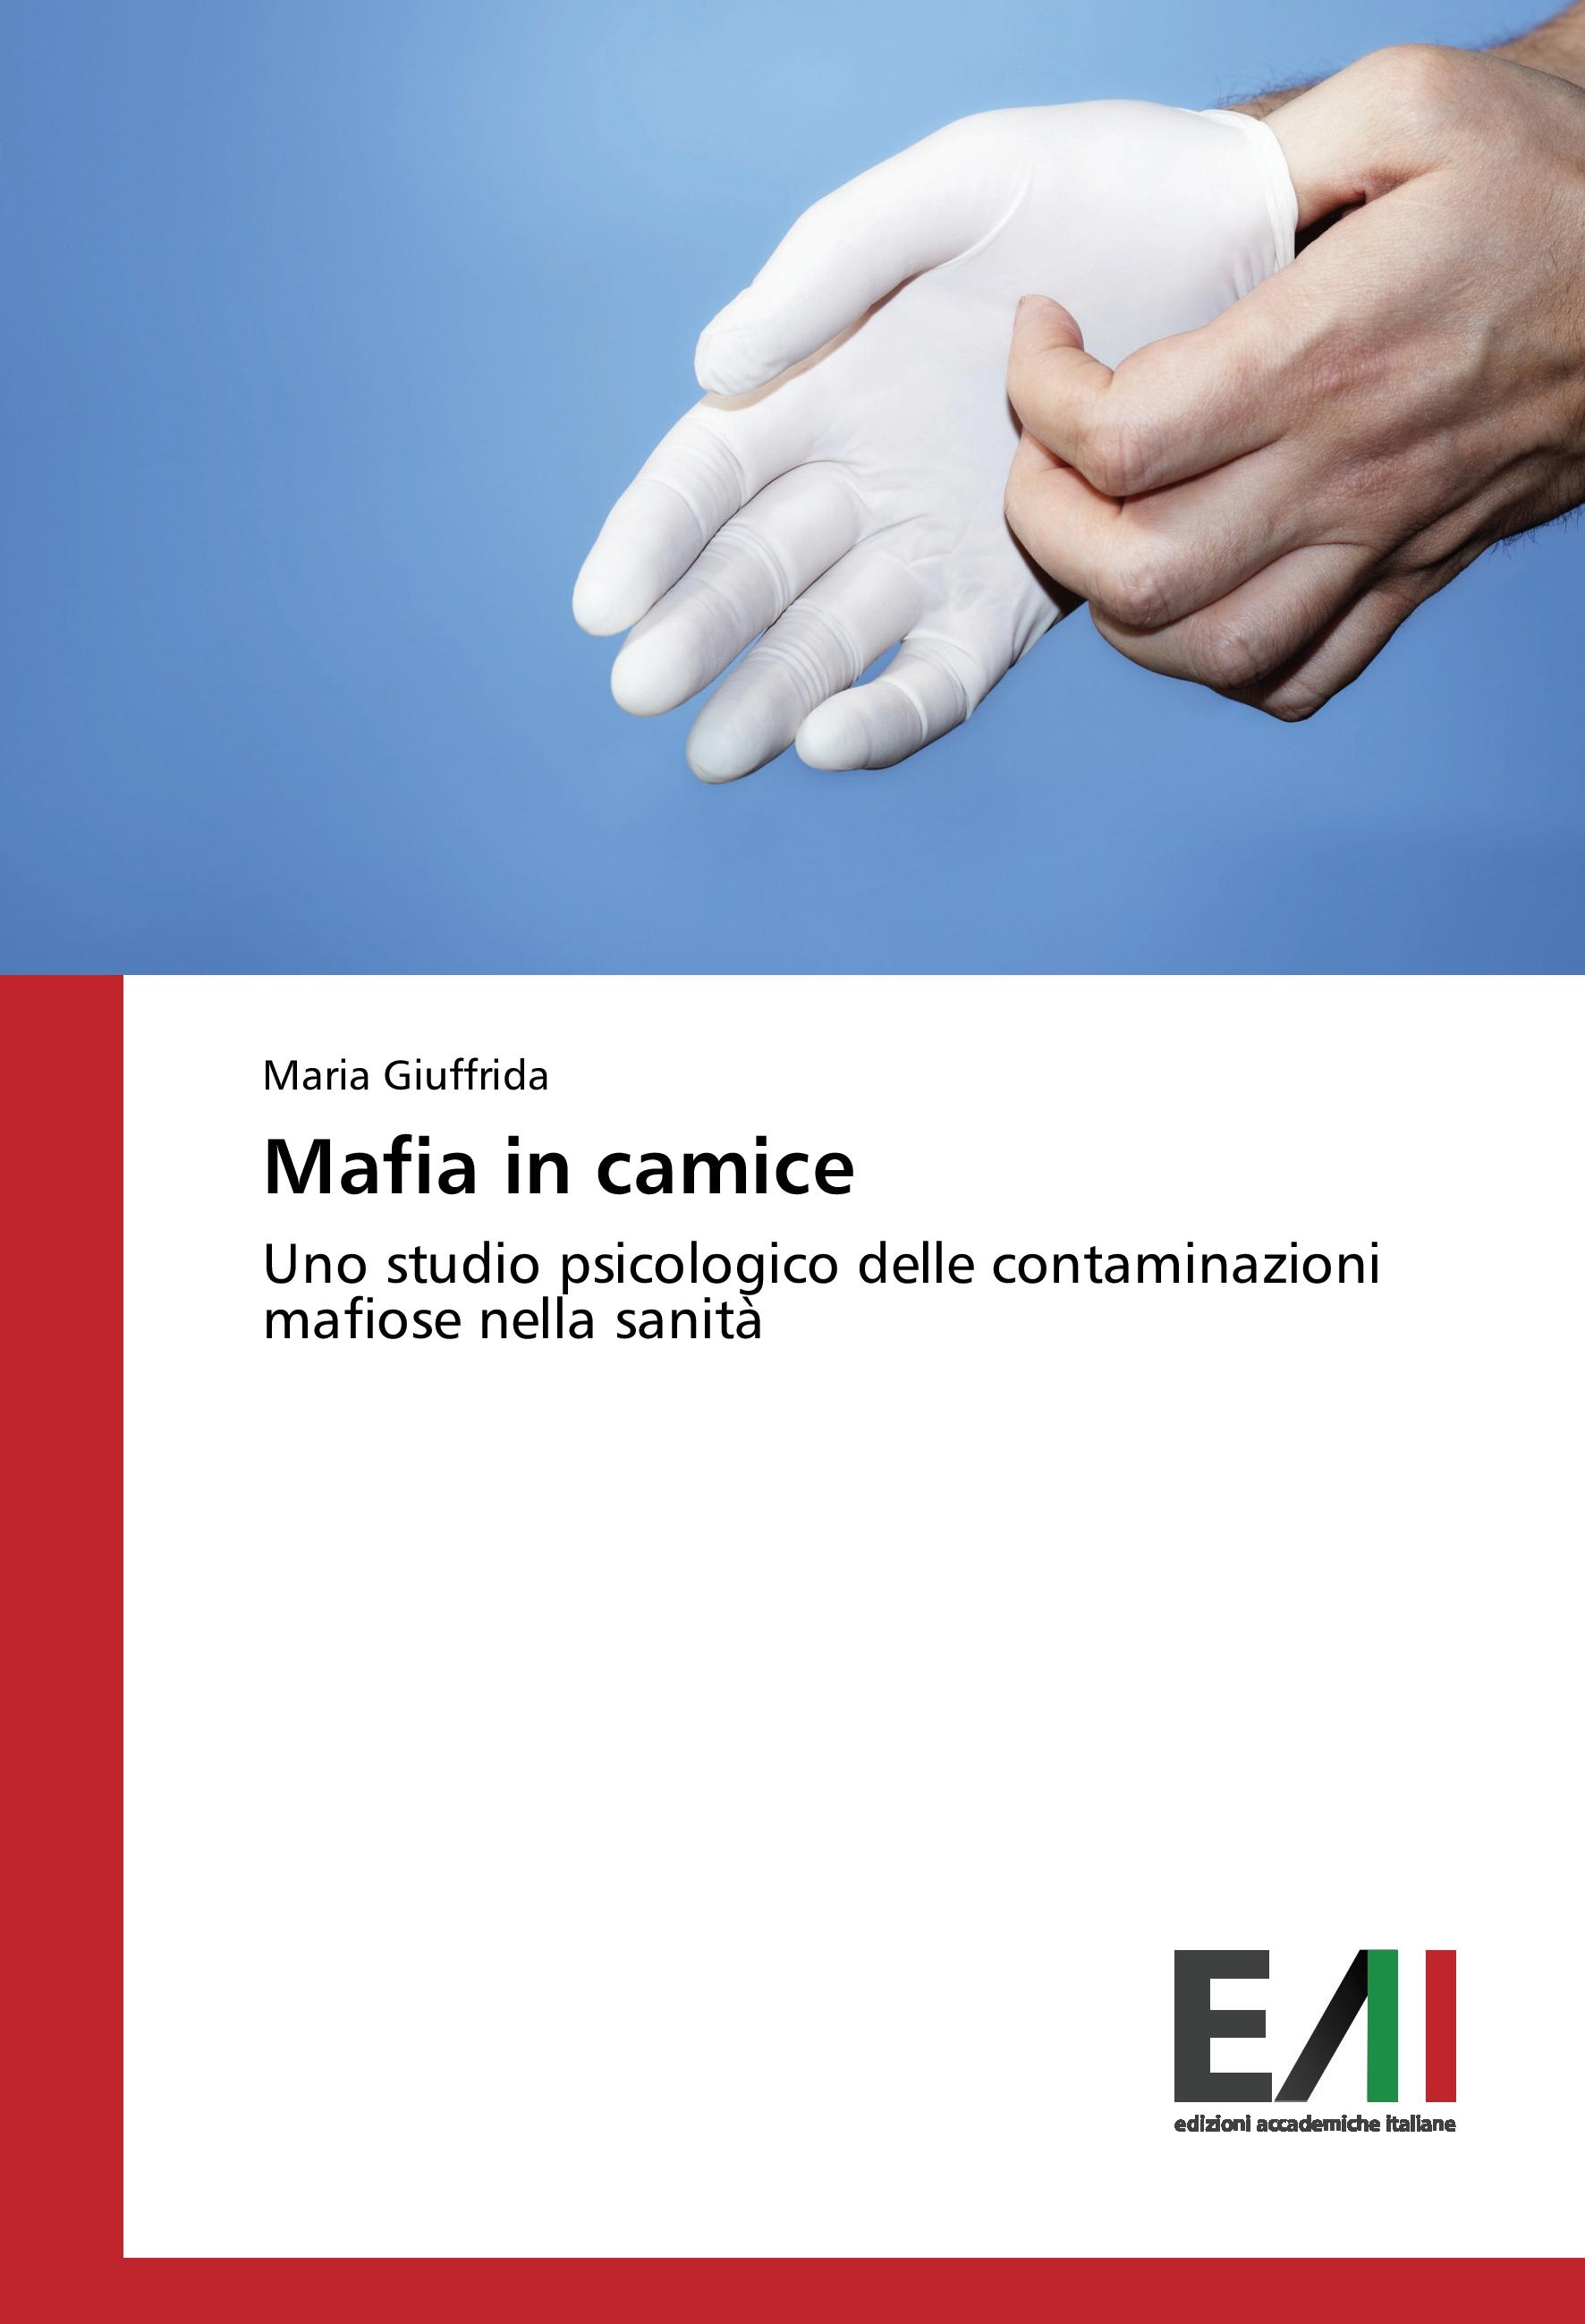 Mafia in camice - Giuffrida, Maria